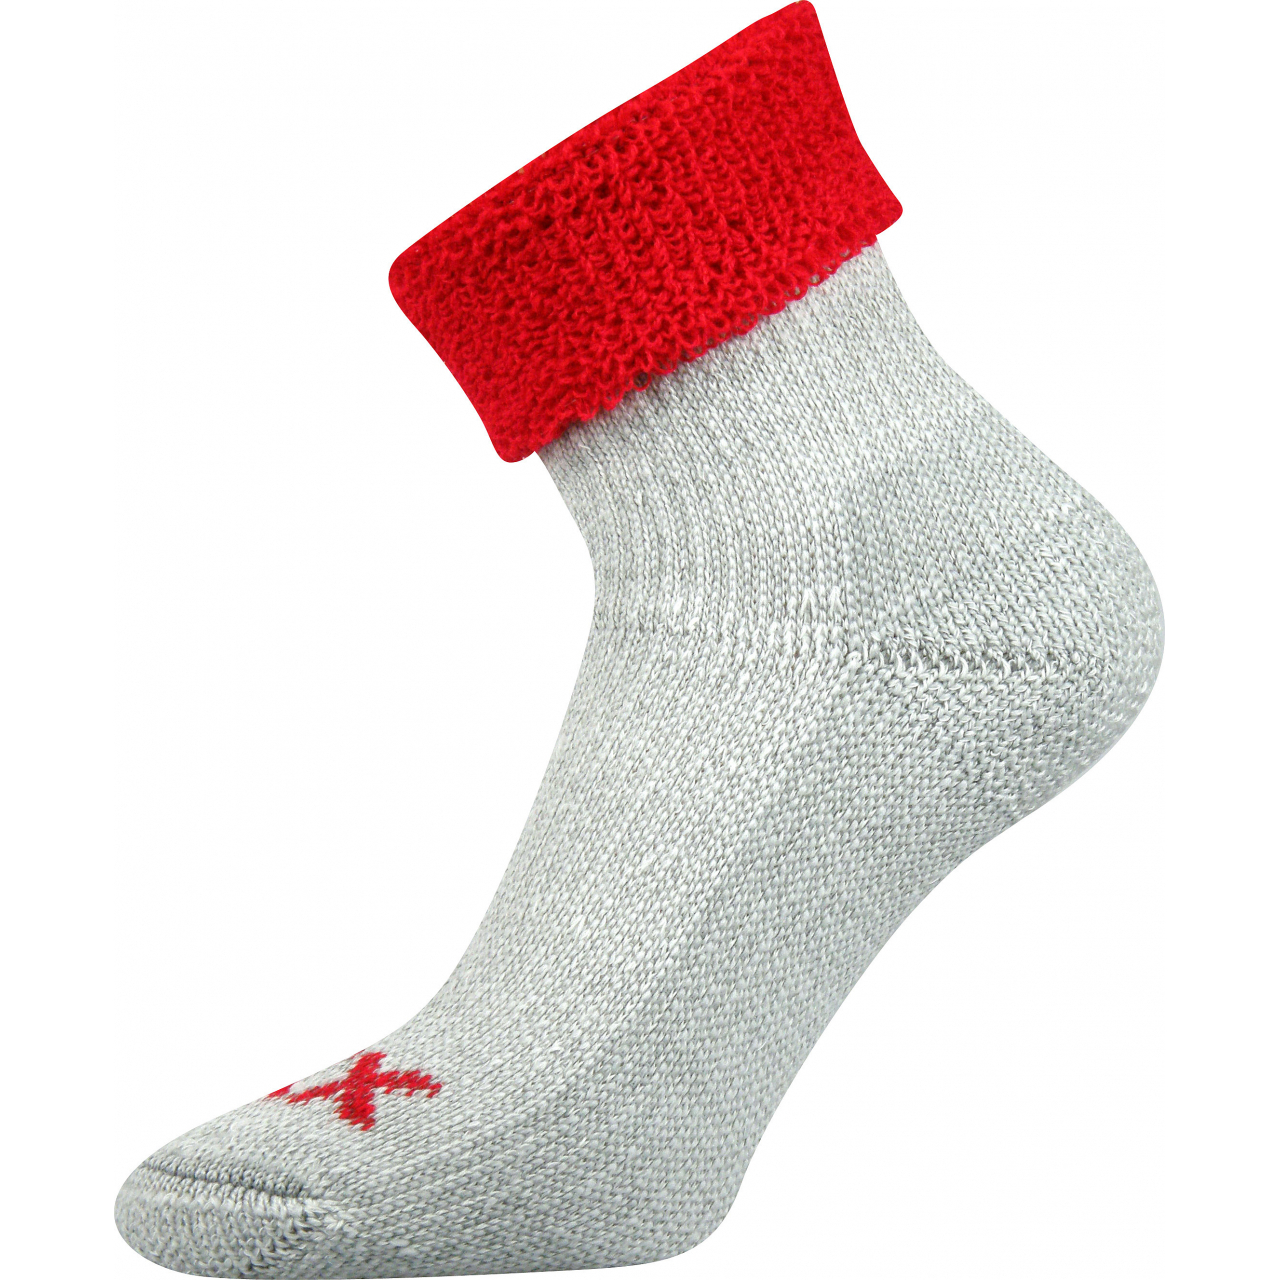 Ponožky dámské termo Voxx Quanta - šedé-červené, 39-42